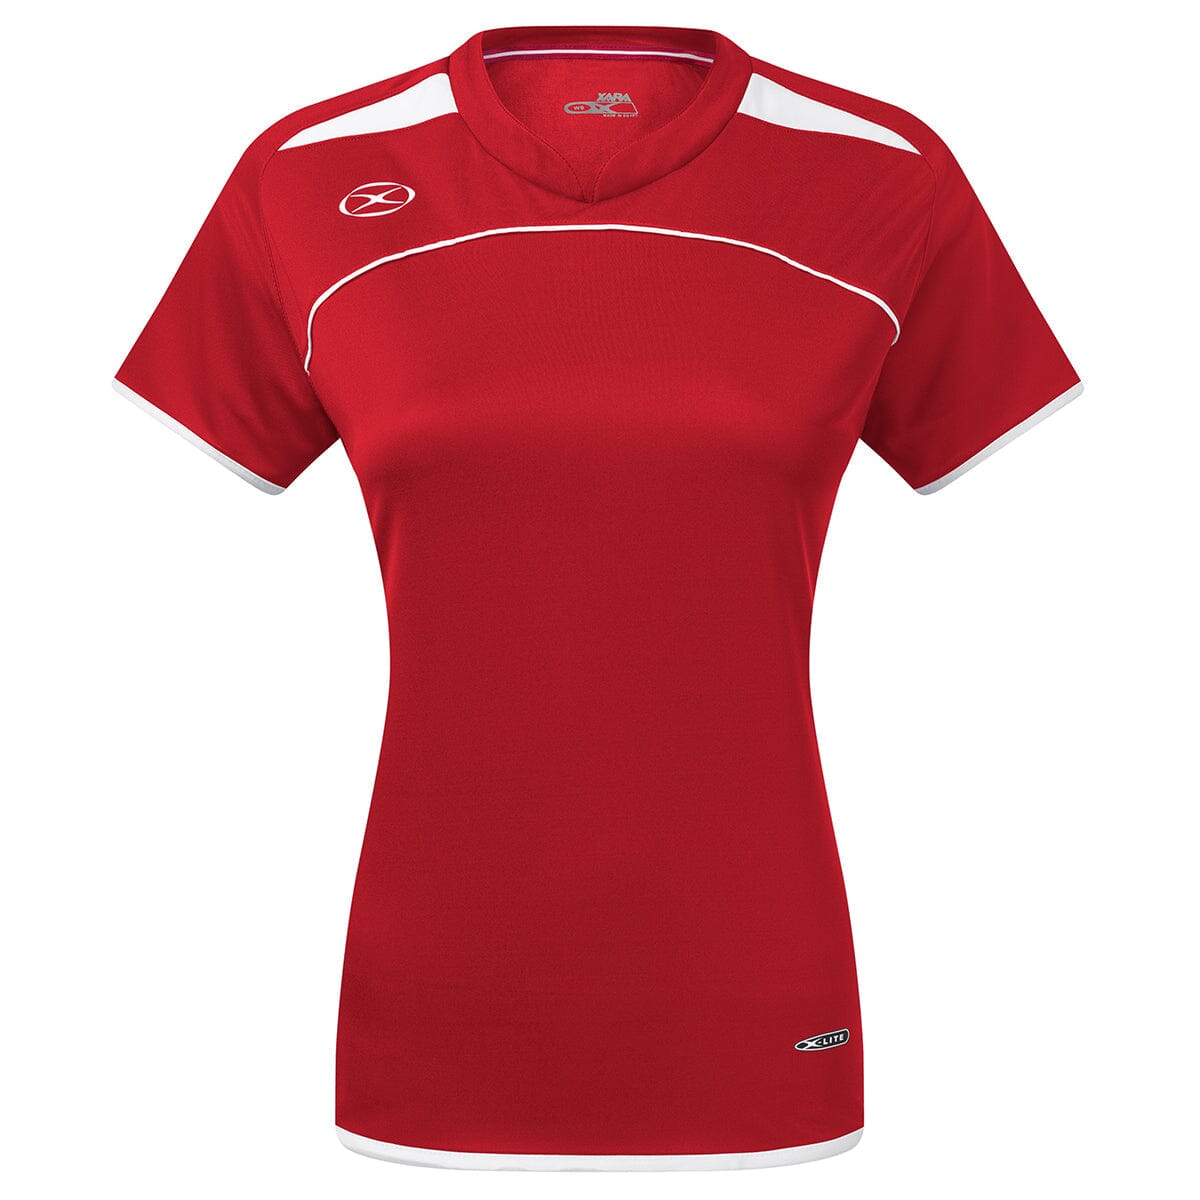 Cardiff Jersey - Female Shirt Xara Soccer Red/White Womens Medium 